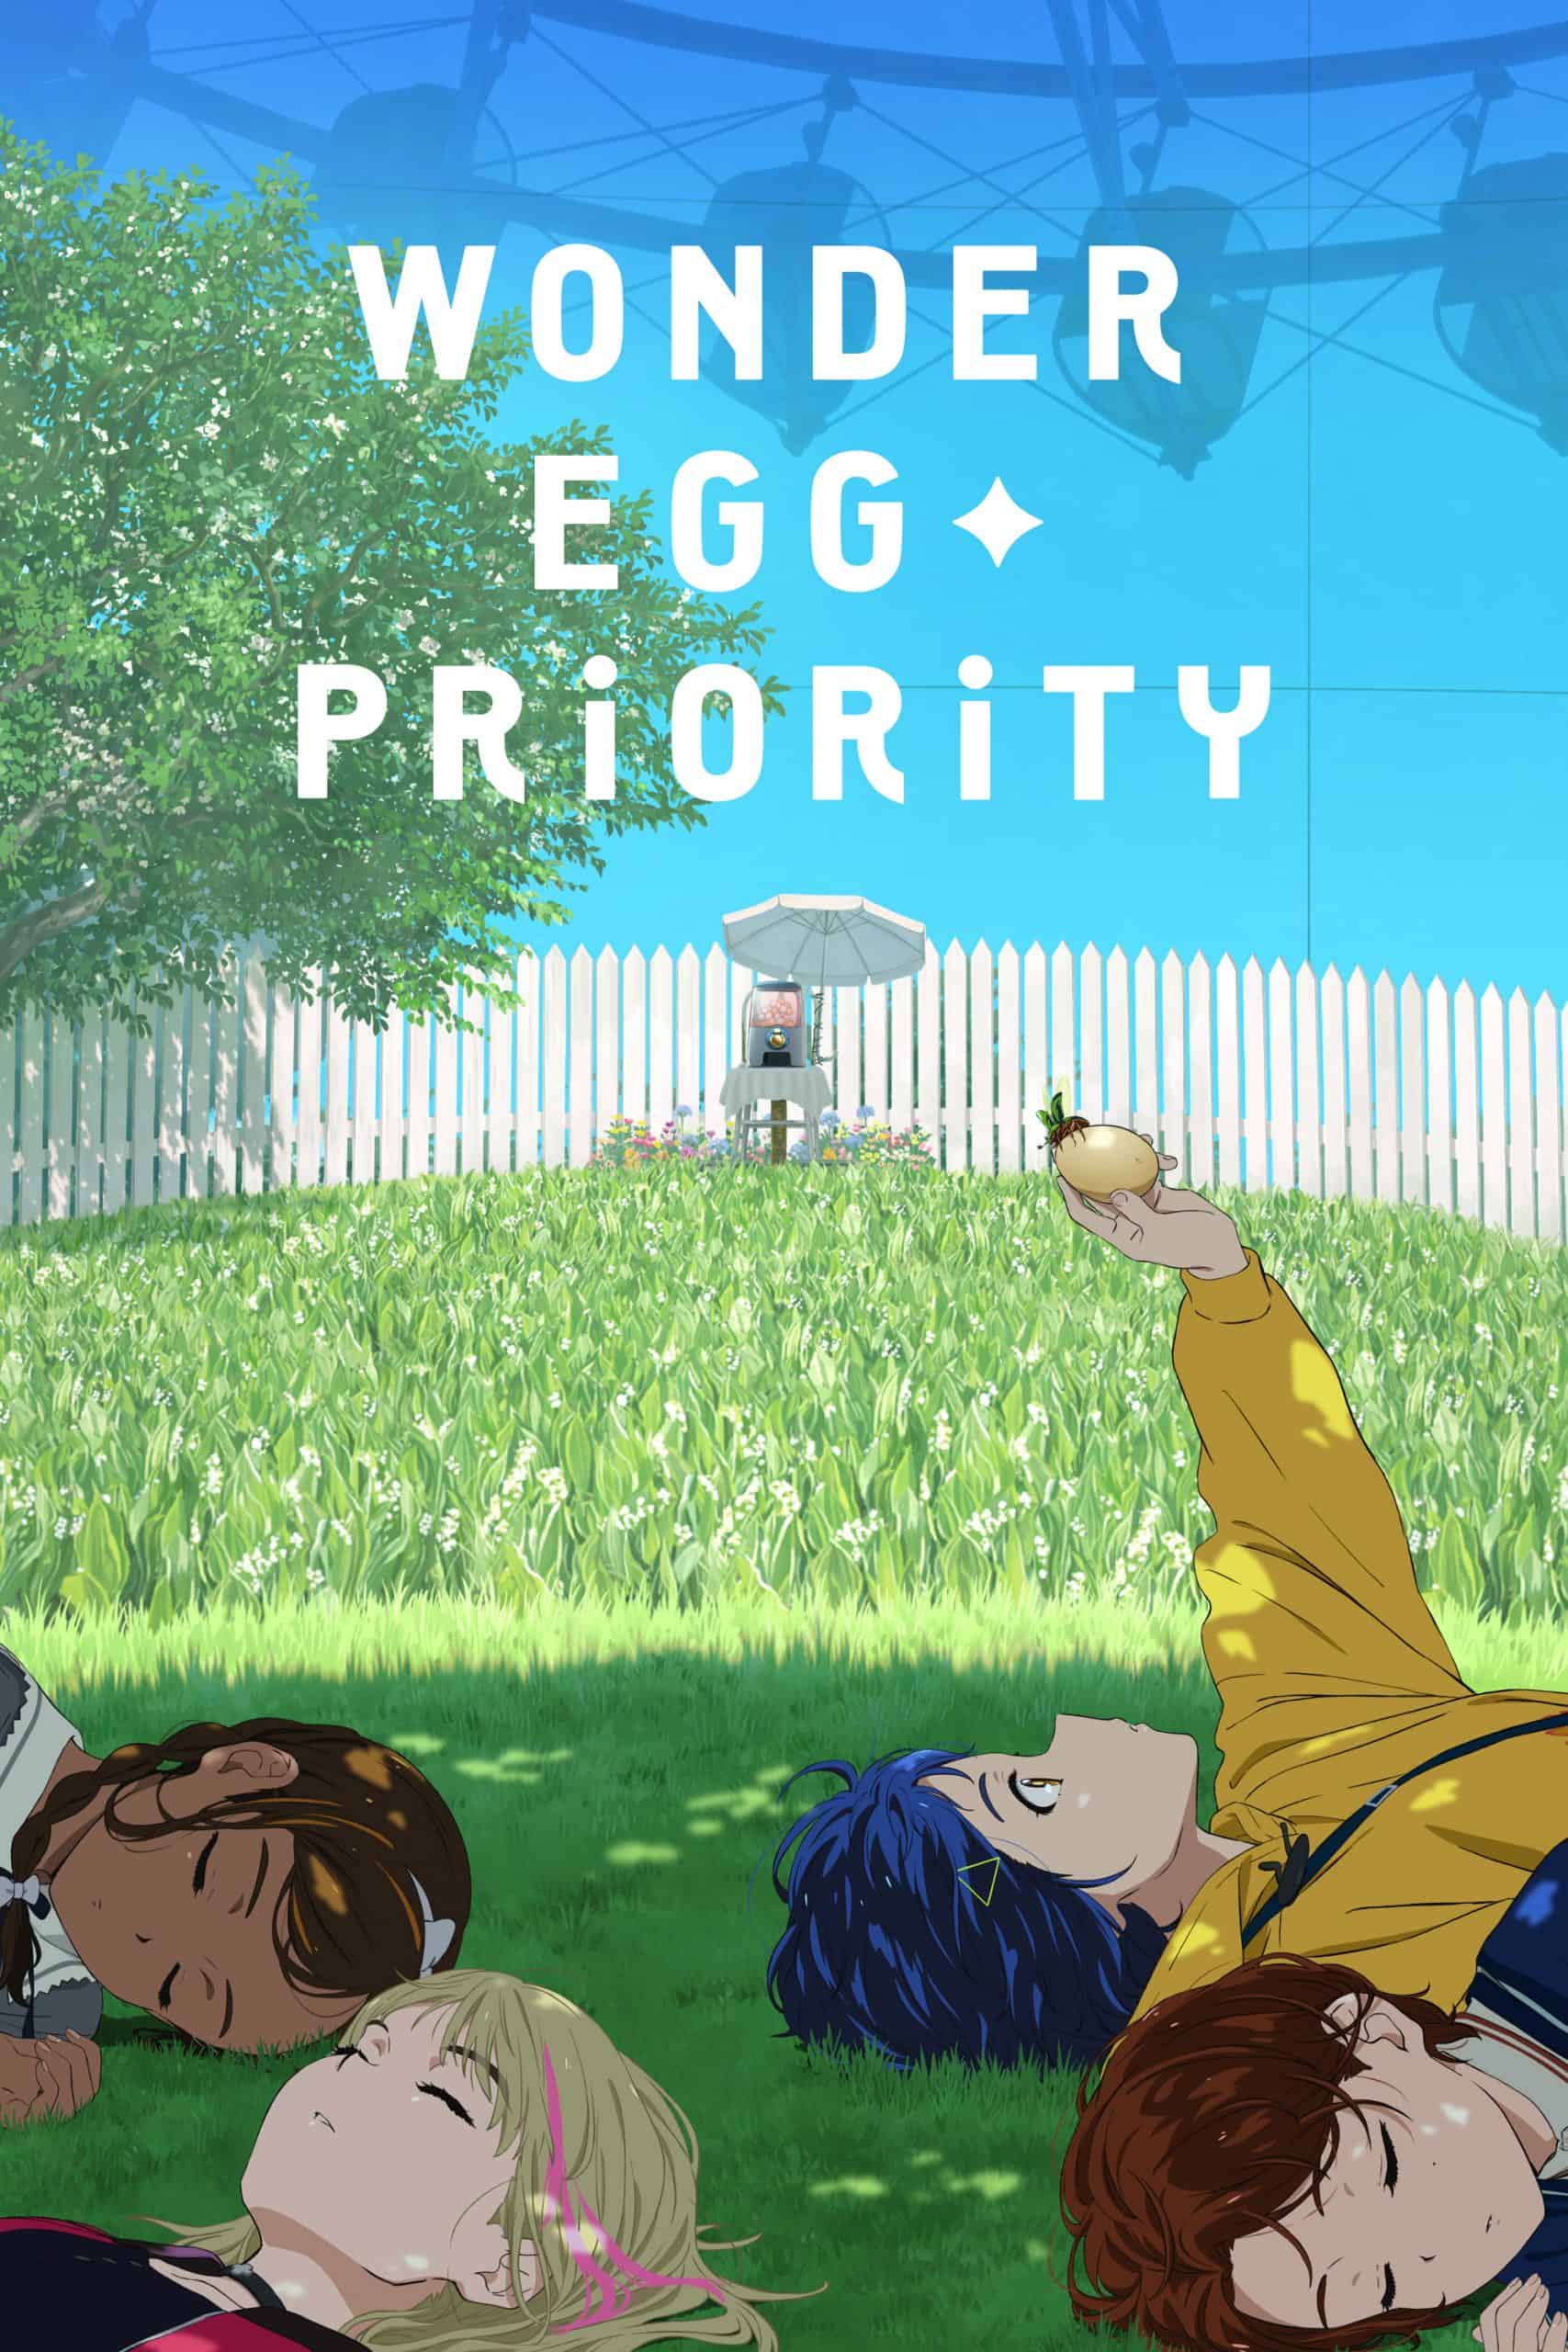 Wonder Egg Priority anime's official cover art